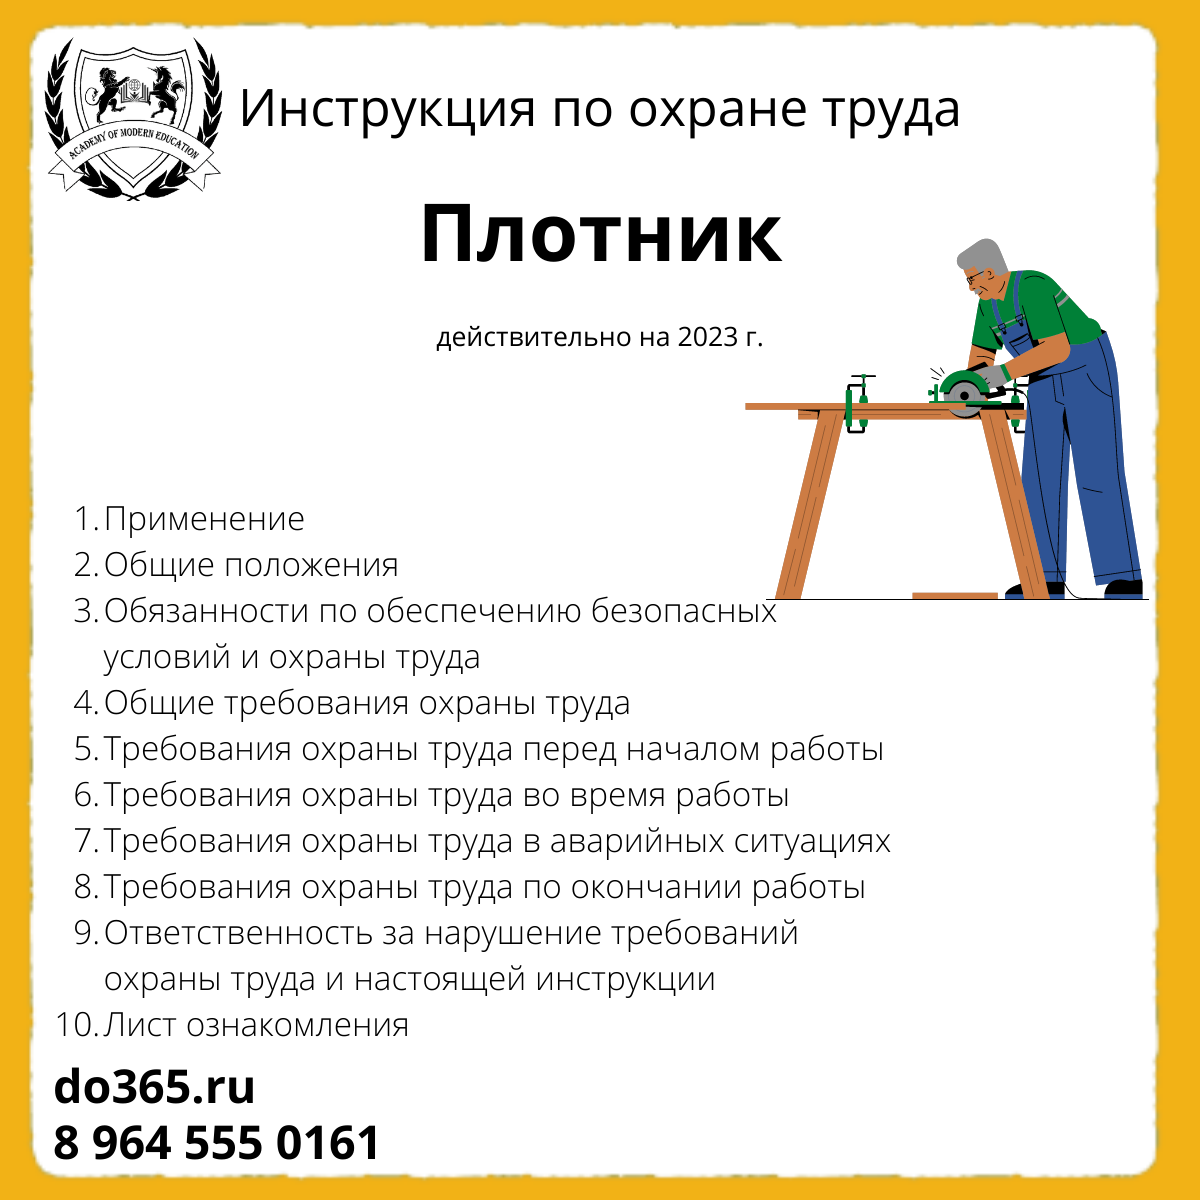 Должностные инструкции плотников. Техника безопасности плотника. Плакаты по охране труда для плотника. Инструкция плотника. Должностная инструкция плотника по охране труда.